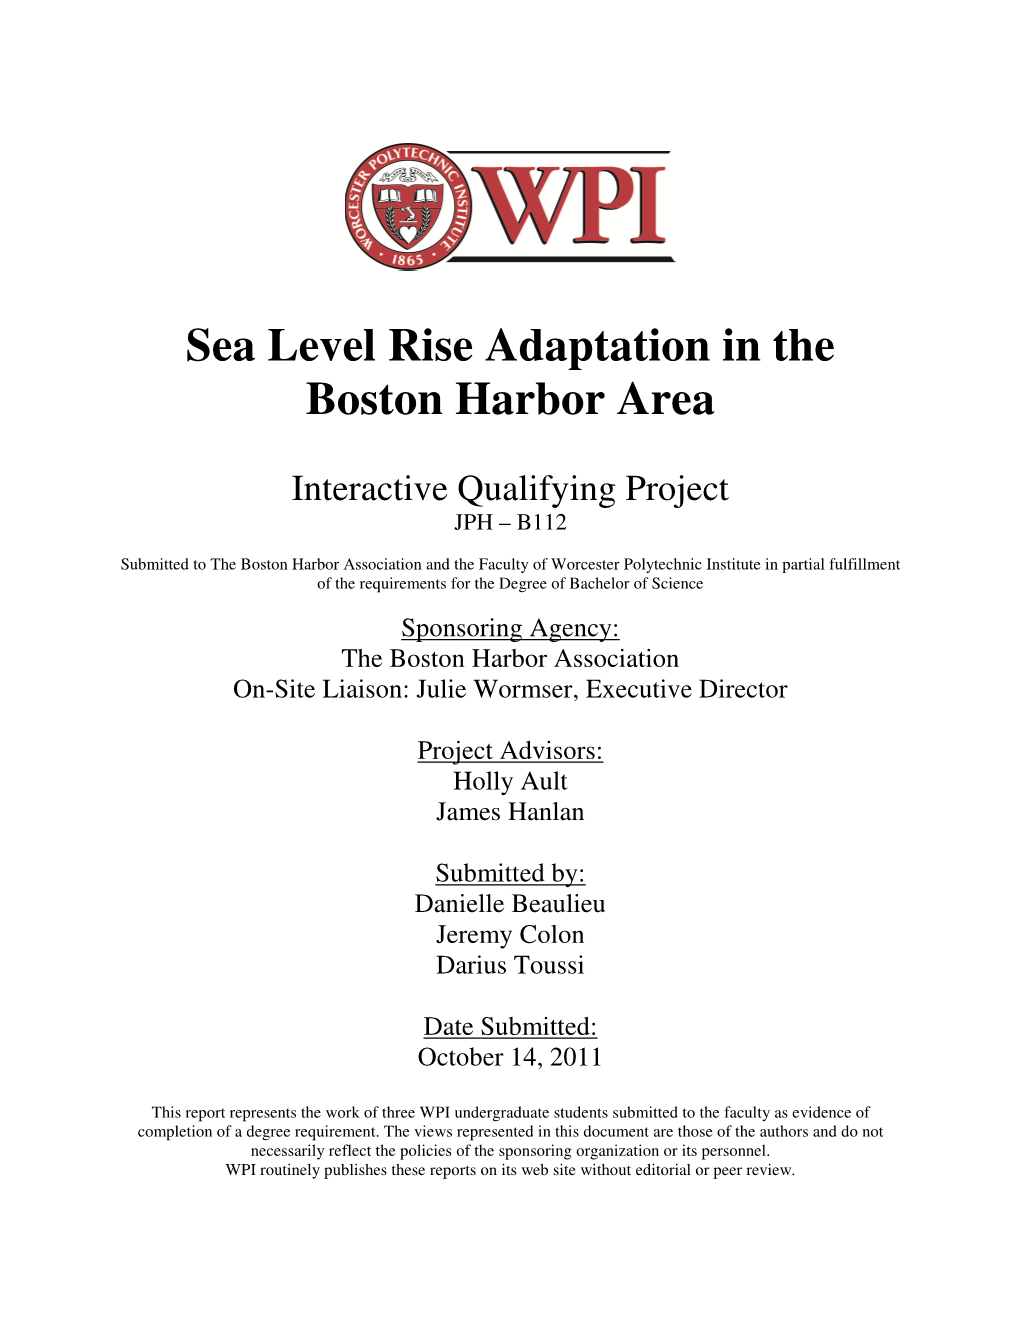 Sea Level Rise Adaptation in the Boston Harbor Area